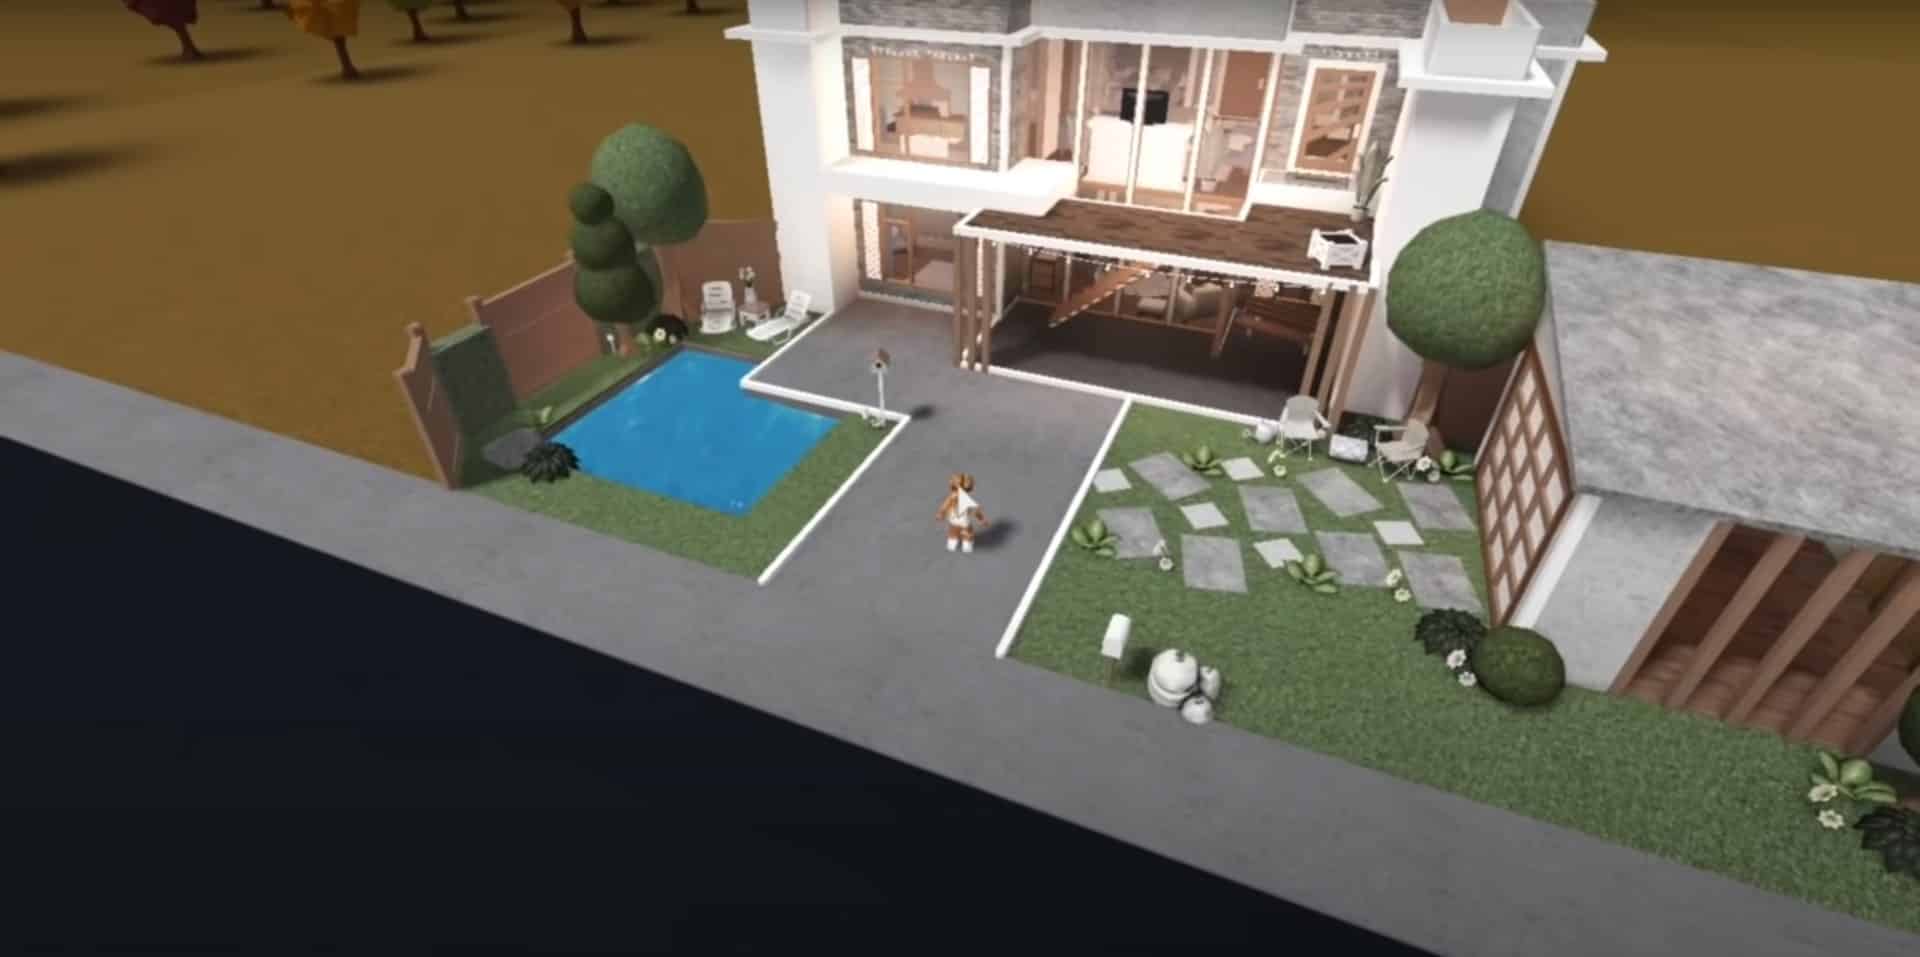 20 Bloxburg House Ideas in 2022